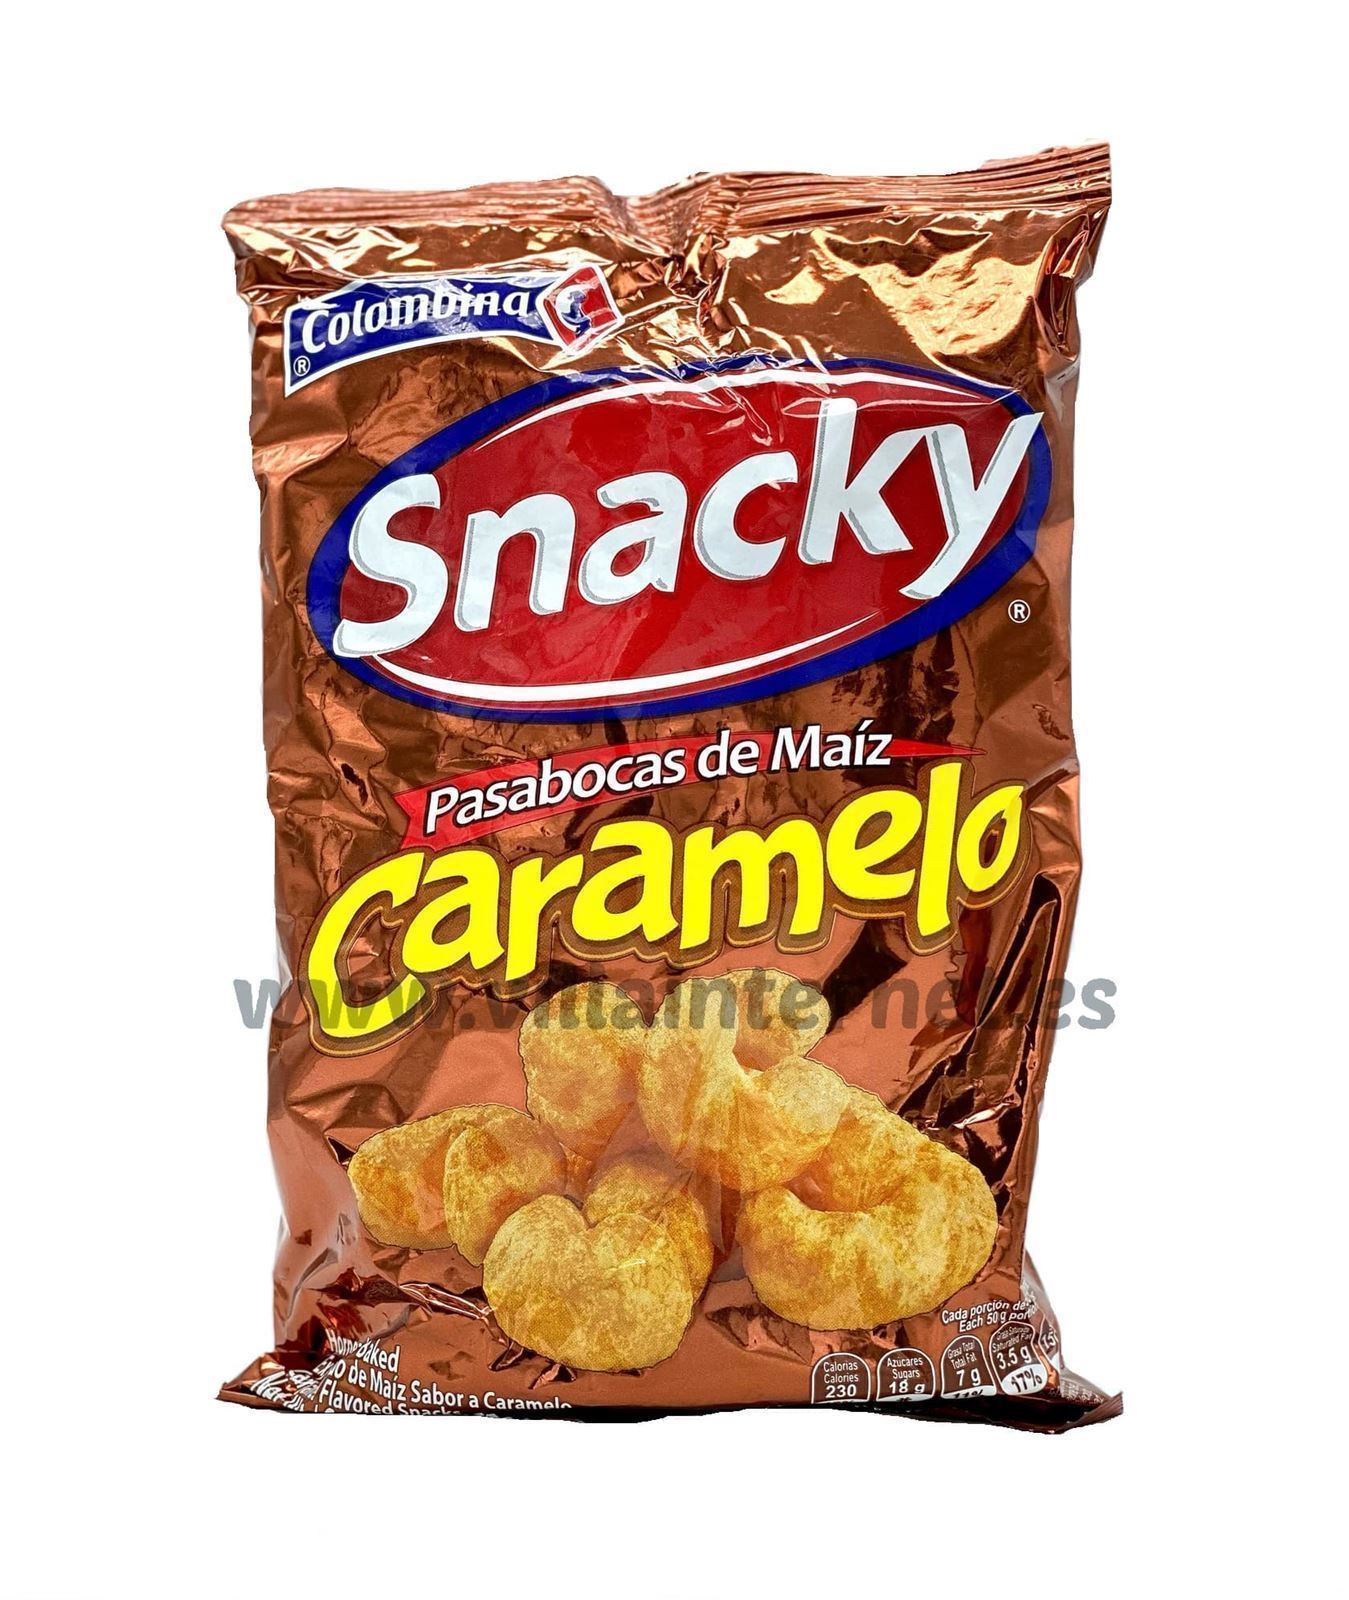 Snacky sabor caramelo 50g - Imagen 1